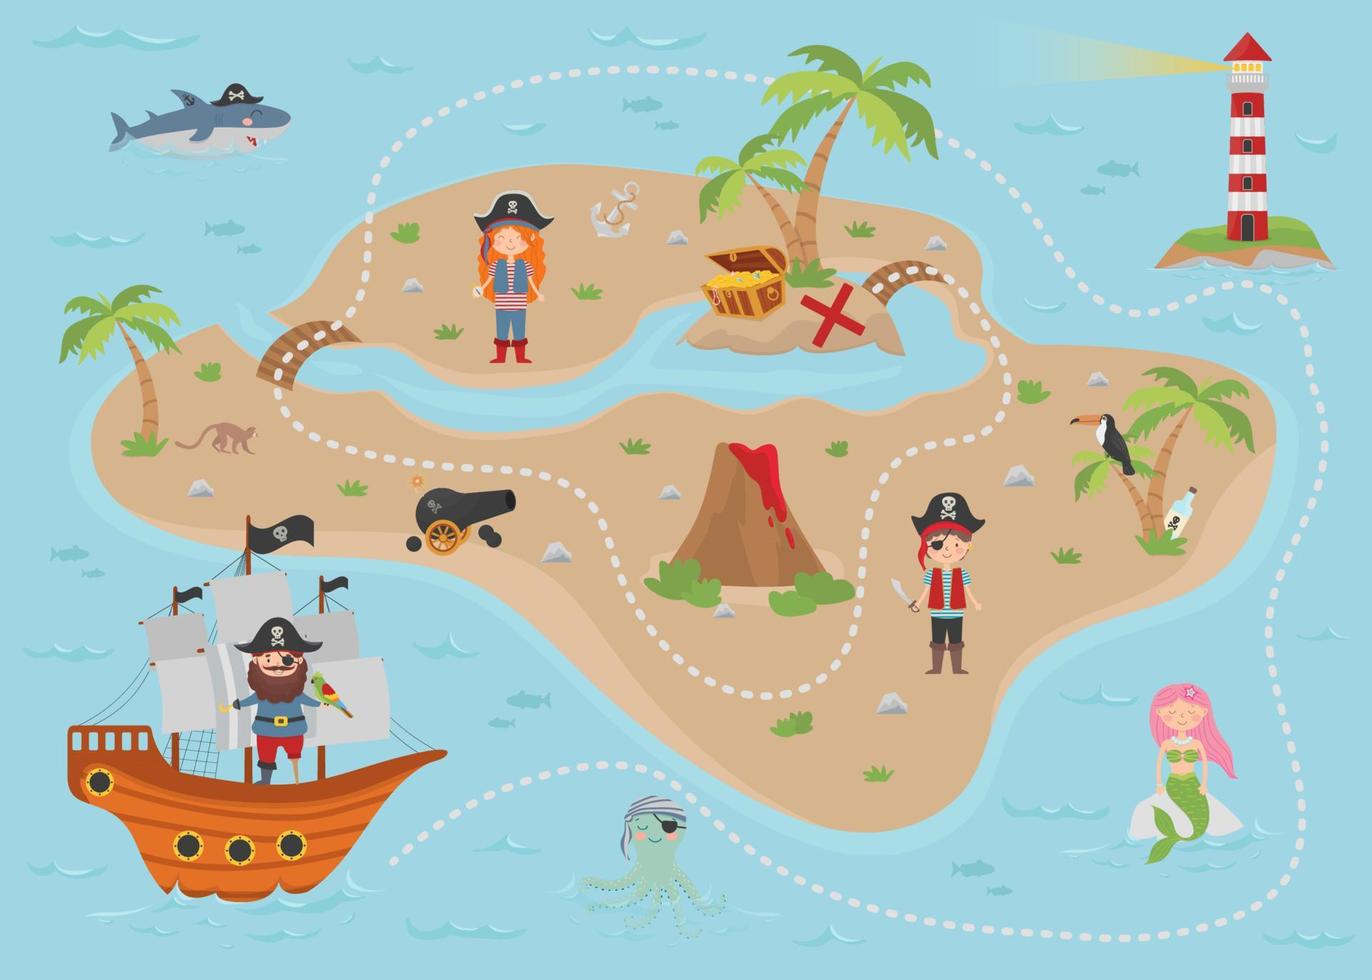 mapa del tesoro pirata de dibujos animados para niños. El mapa tiene una linda sirena, piratas, un pulpo, un tiburón, un faro, una isla del tesoro, un cofre y un barco. vector